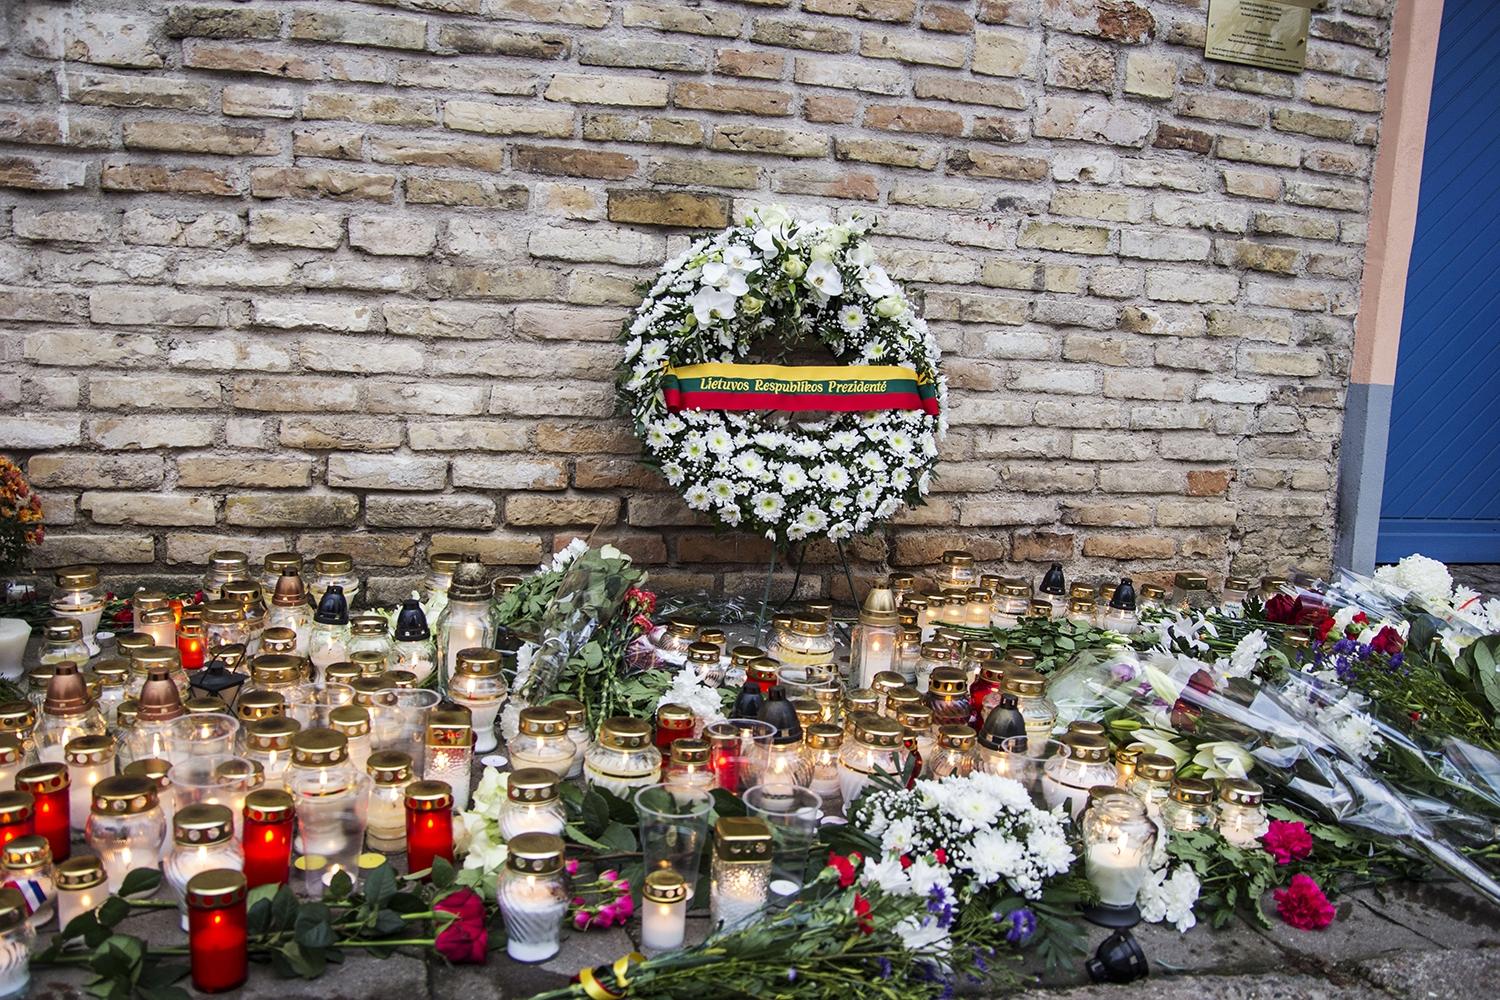 Po išpuolių Paryžiuje vertinamos grėsmės Lietuvoje / URM nuotr. Prie Prancūzijos ambasados padėtas Prezidentės Dalios Grybauskaitės vainikas.